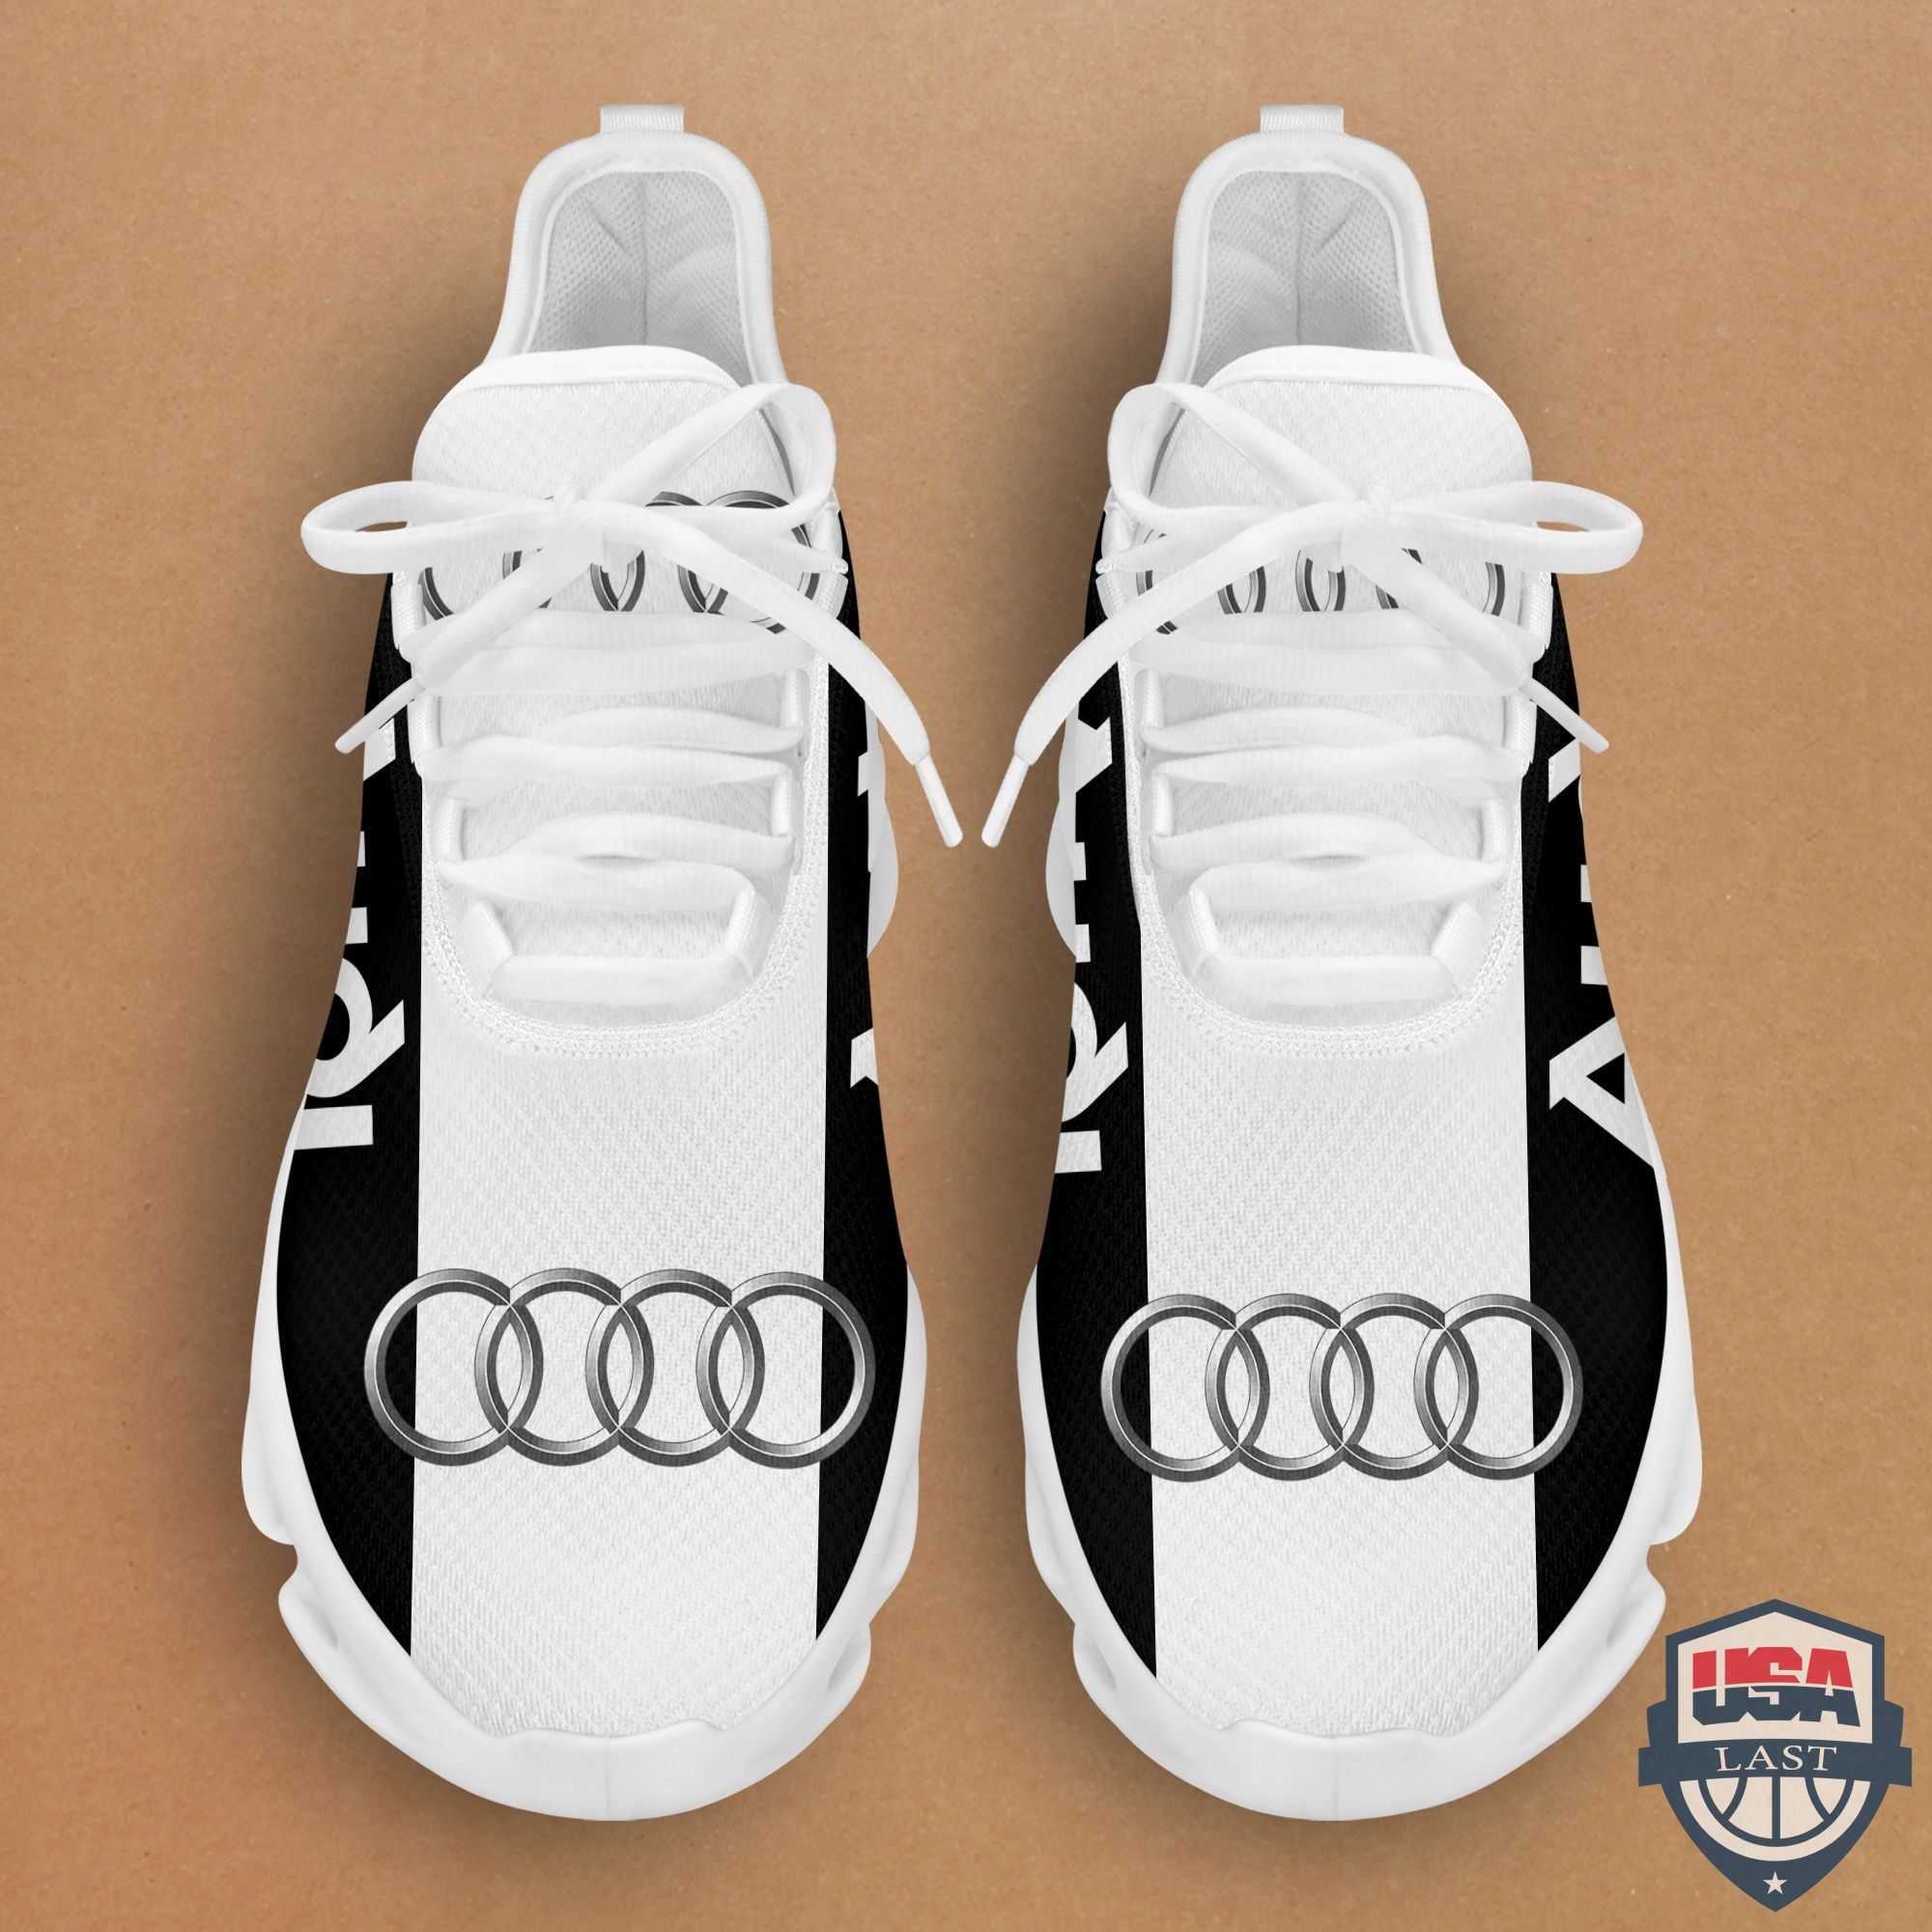 Audi Sneaker Max Soul Shoes White Version